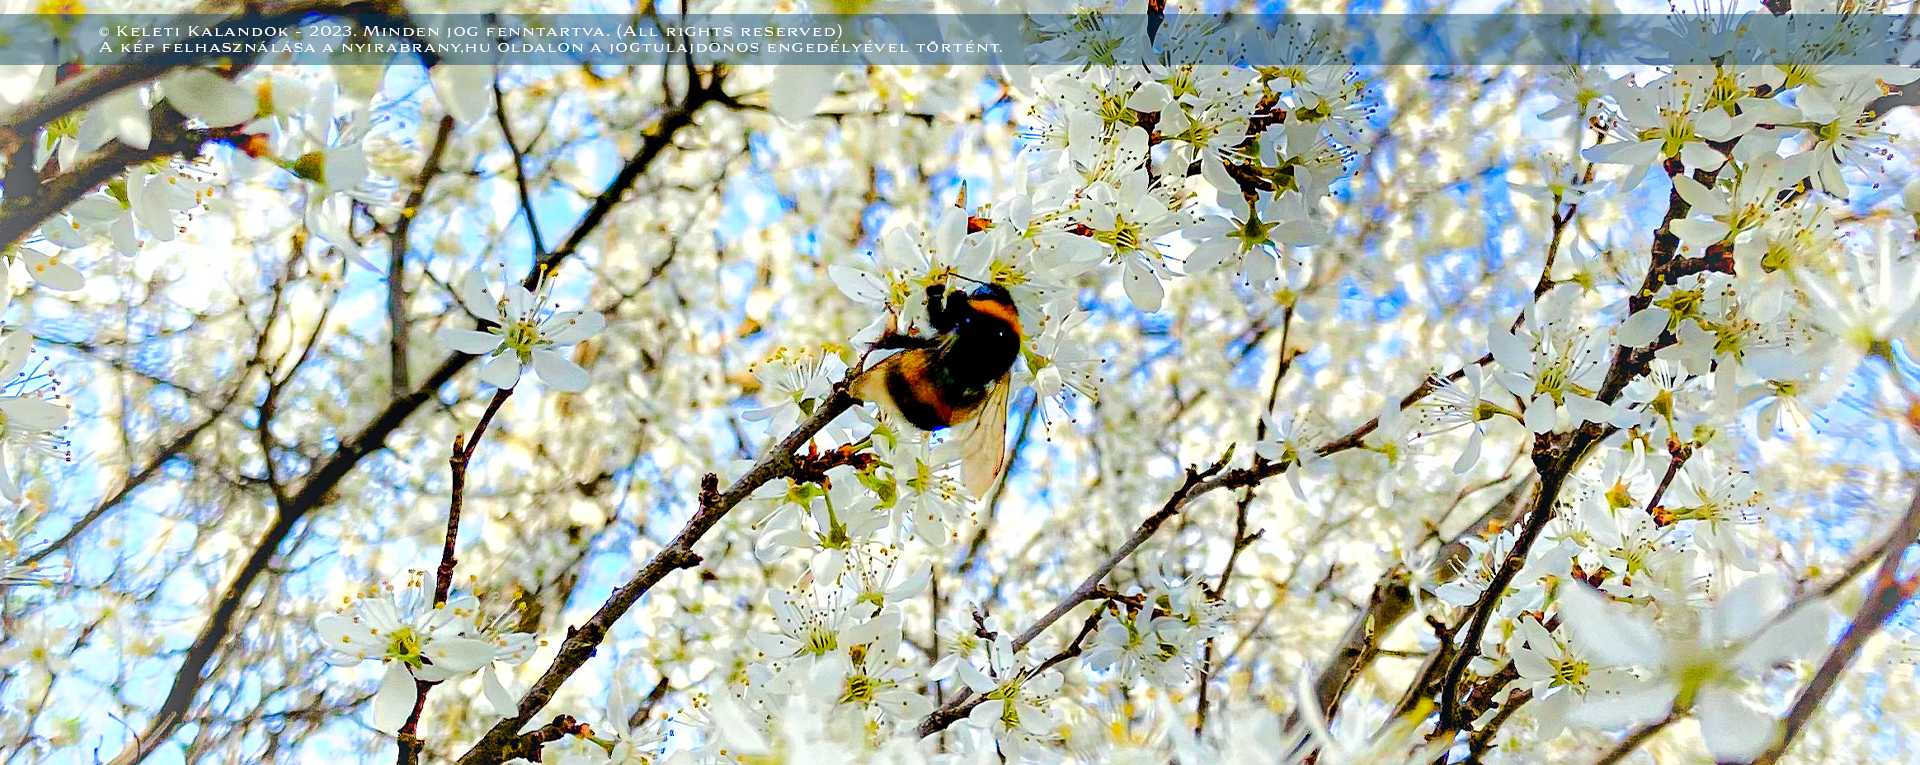 Tavaszi virágzás a Nyírábrányi Kis-Mogyorós Natura 2000 Természetvédelmi területen